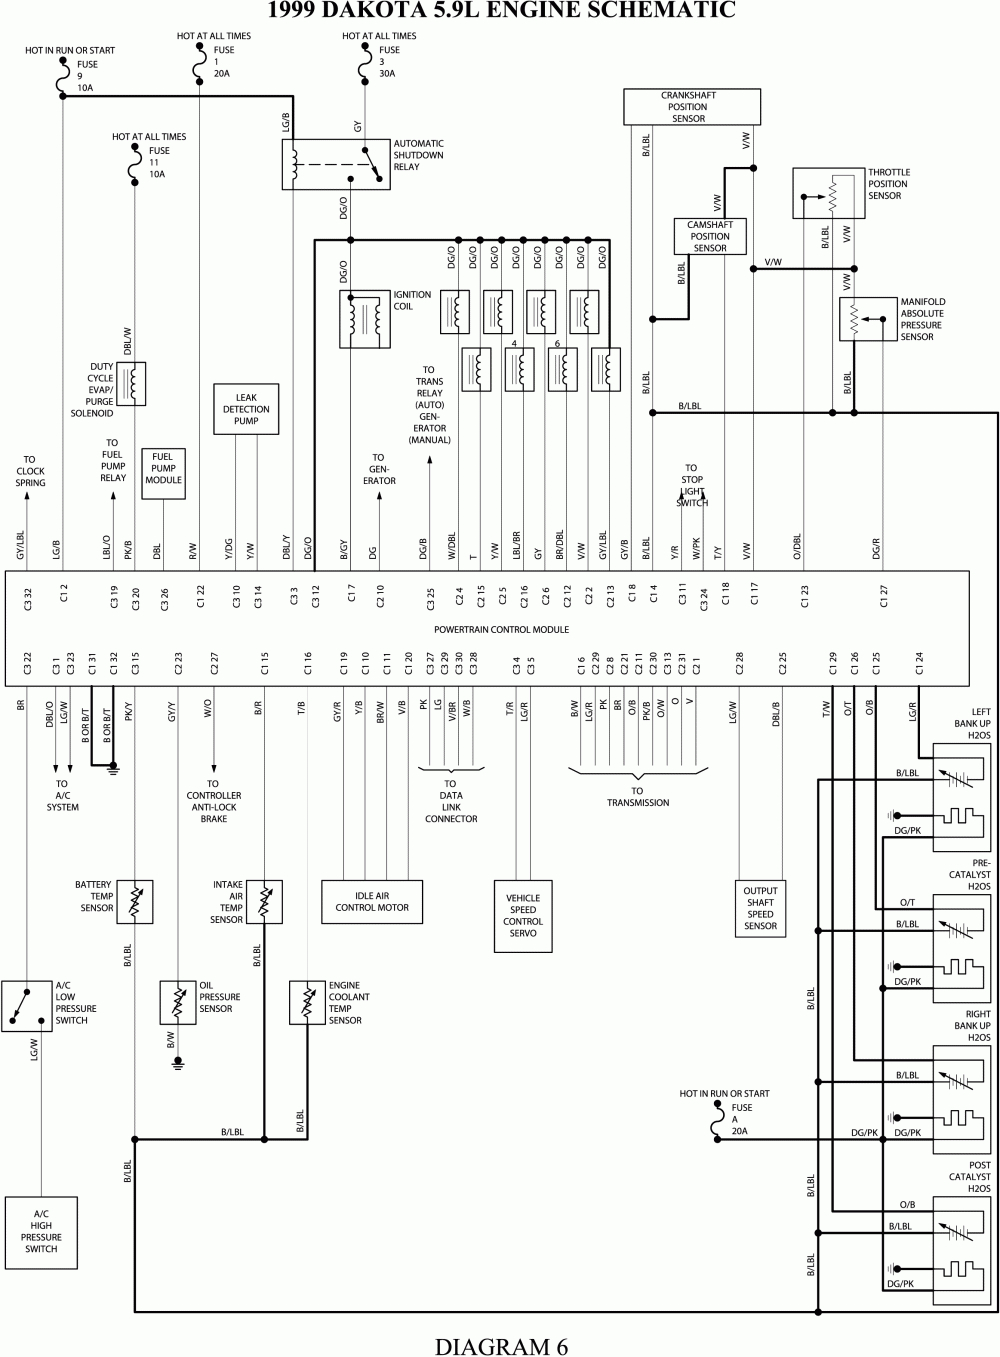 Chrysler Electronic Ignition Wiring Diagram Free Picture | Wiring - Dodge Electronic Ignition Wiring Diagram